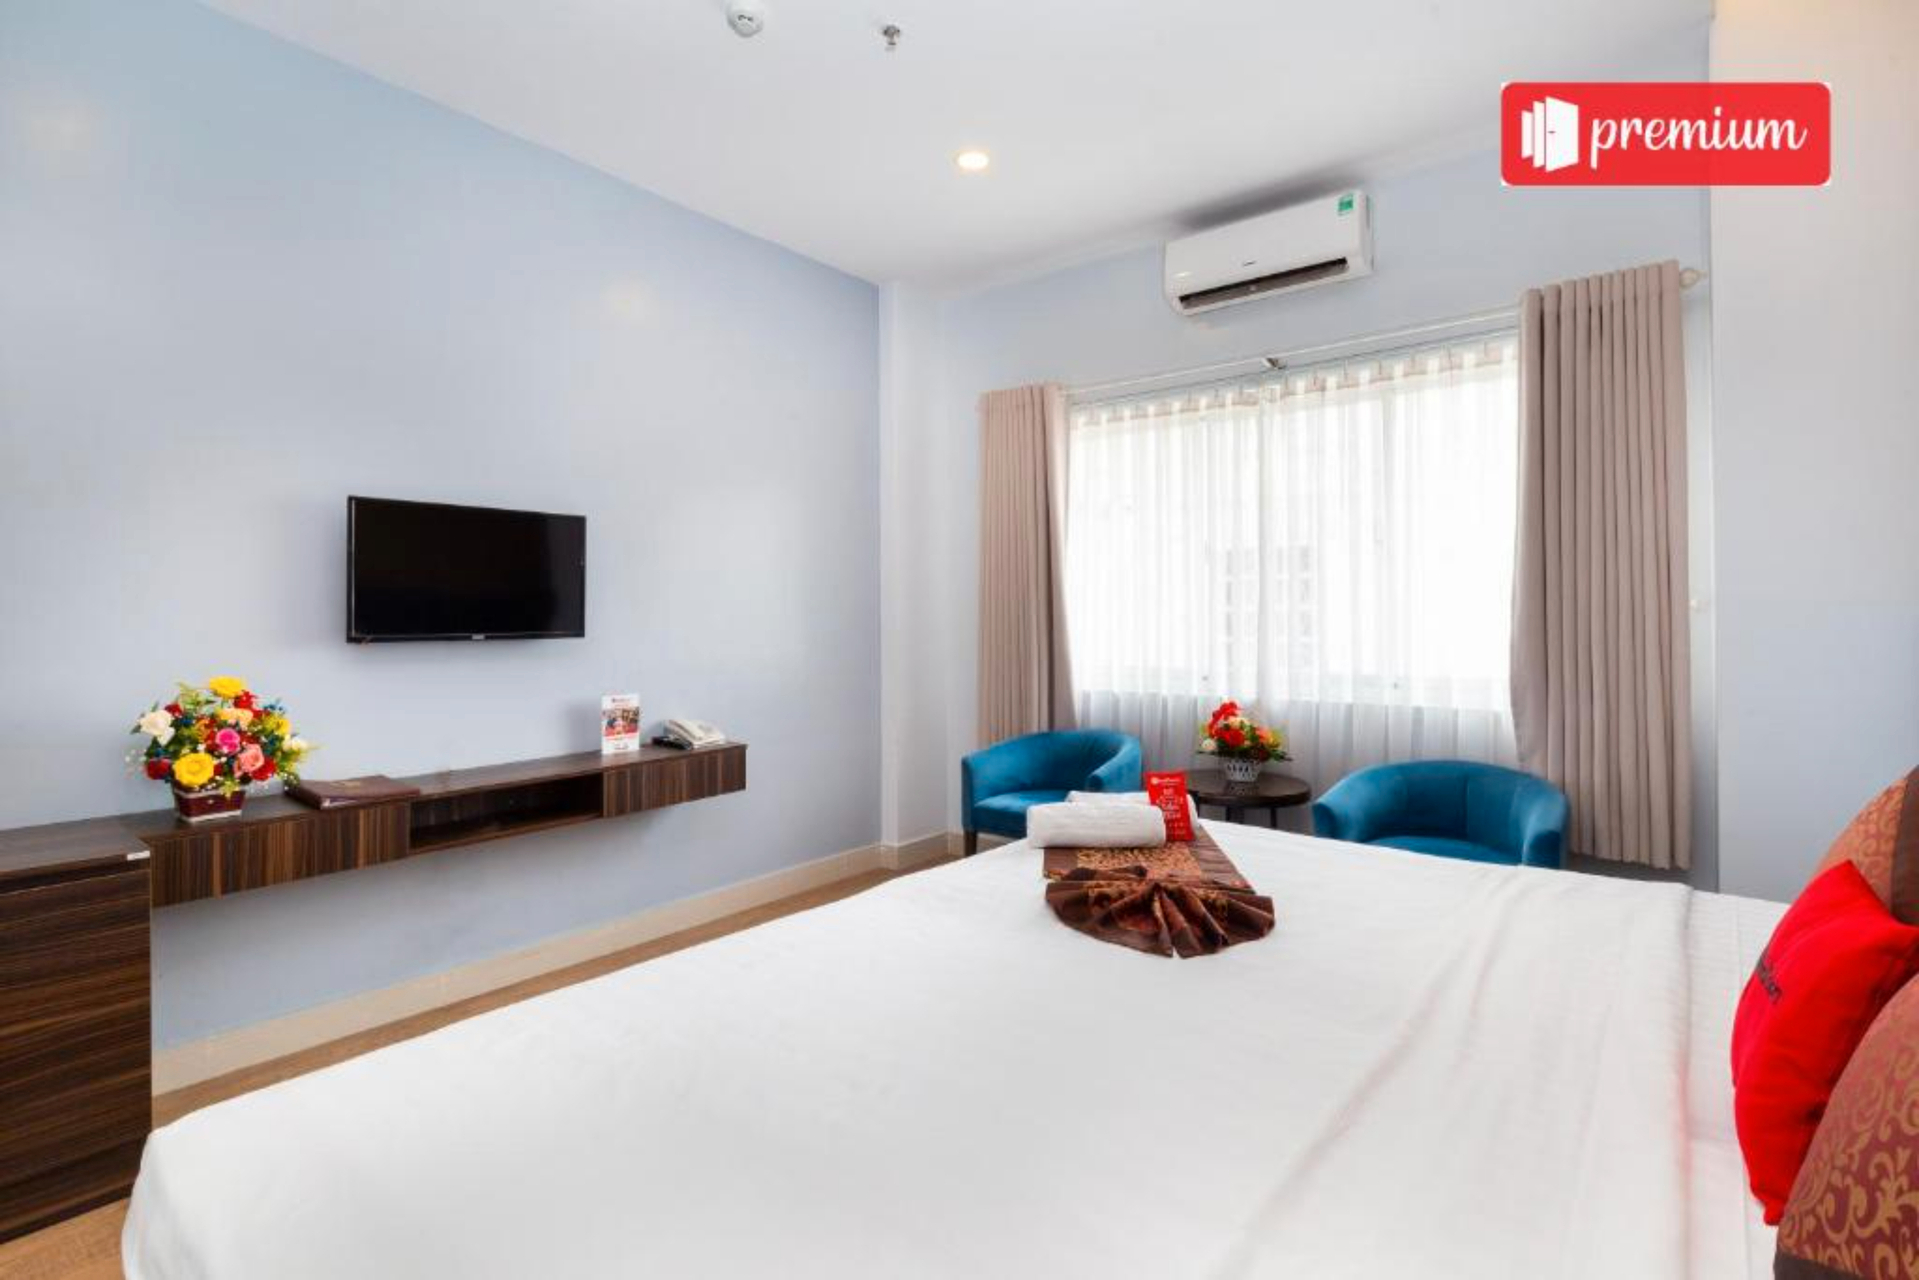 Bedroom 2, RedDoorz Bamboo Saigon Hotel Su Van Hanh, Quận 10